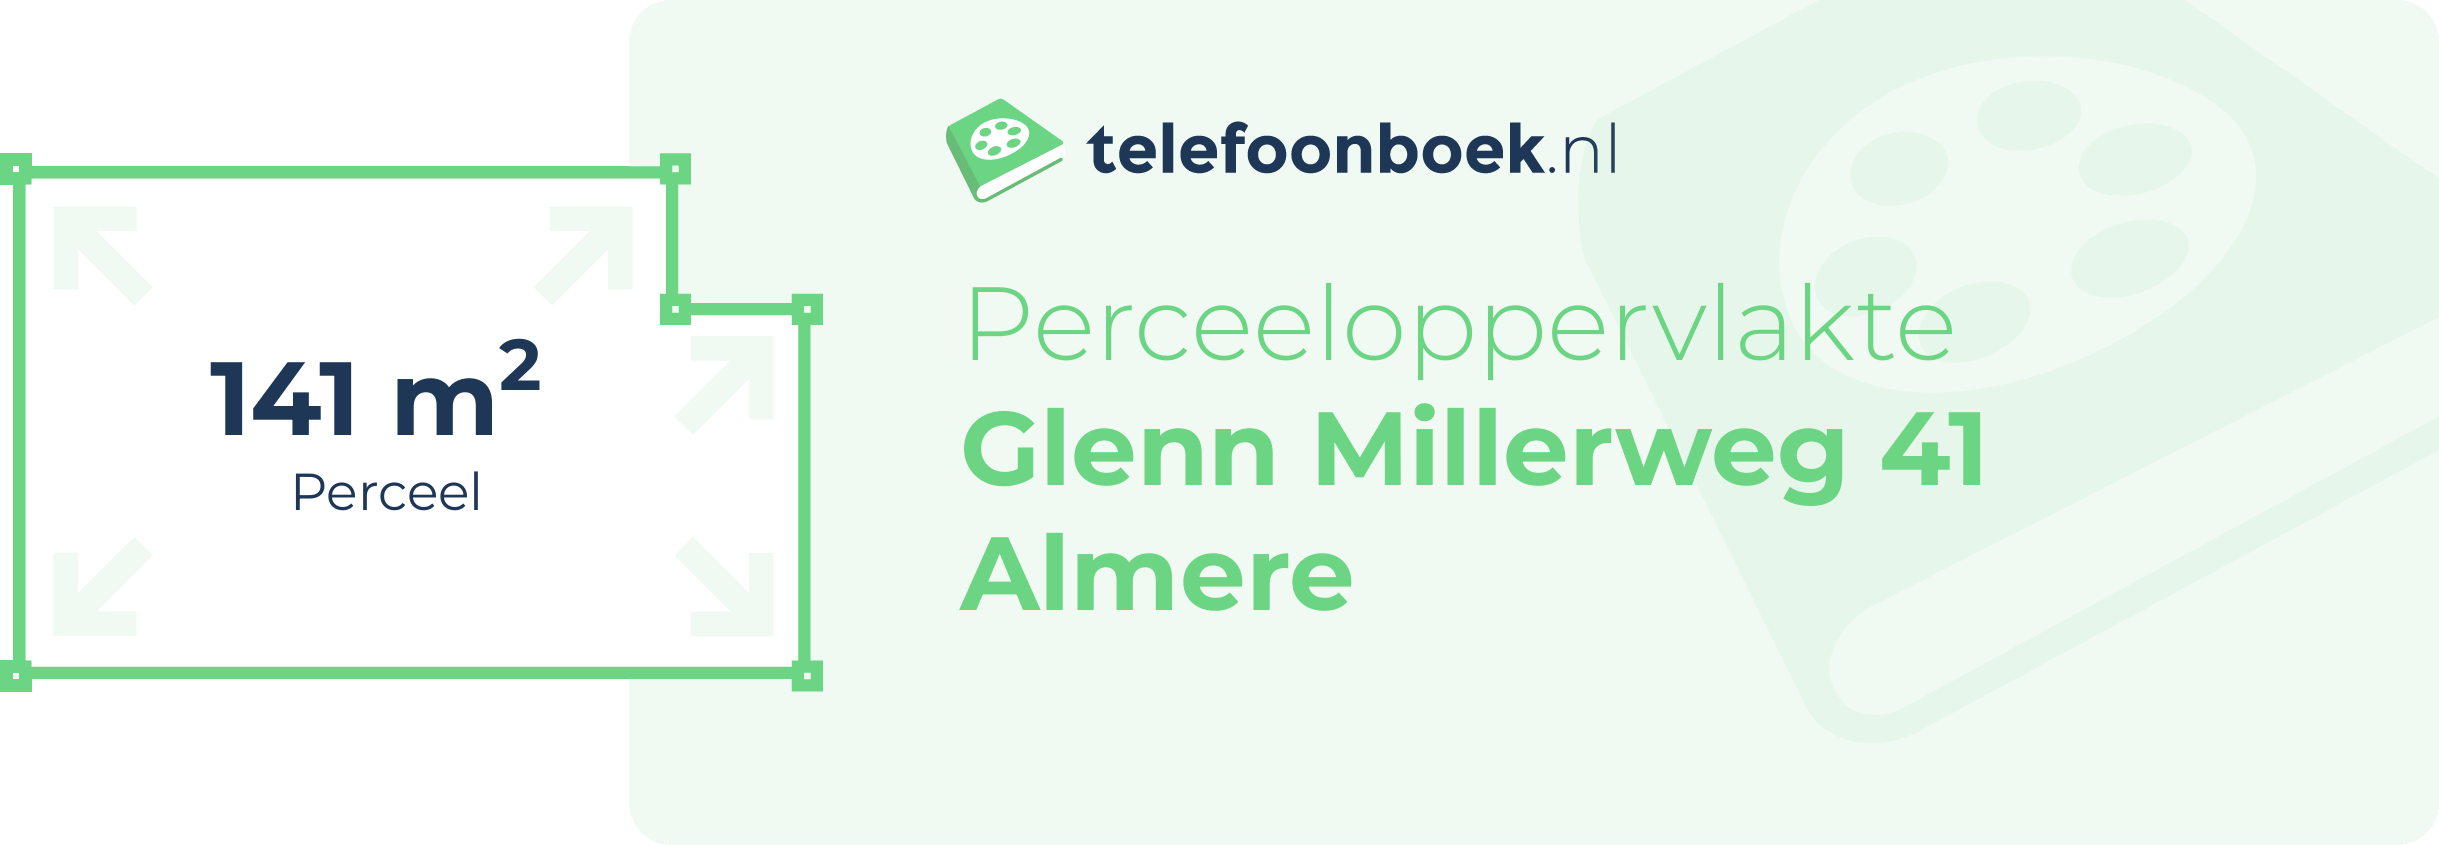 Perceeloppervlakte Glenn Millerweg 41 Almere